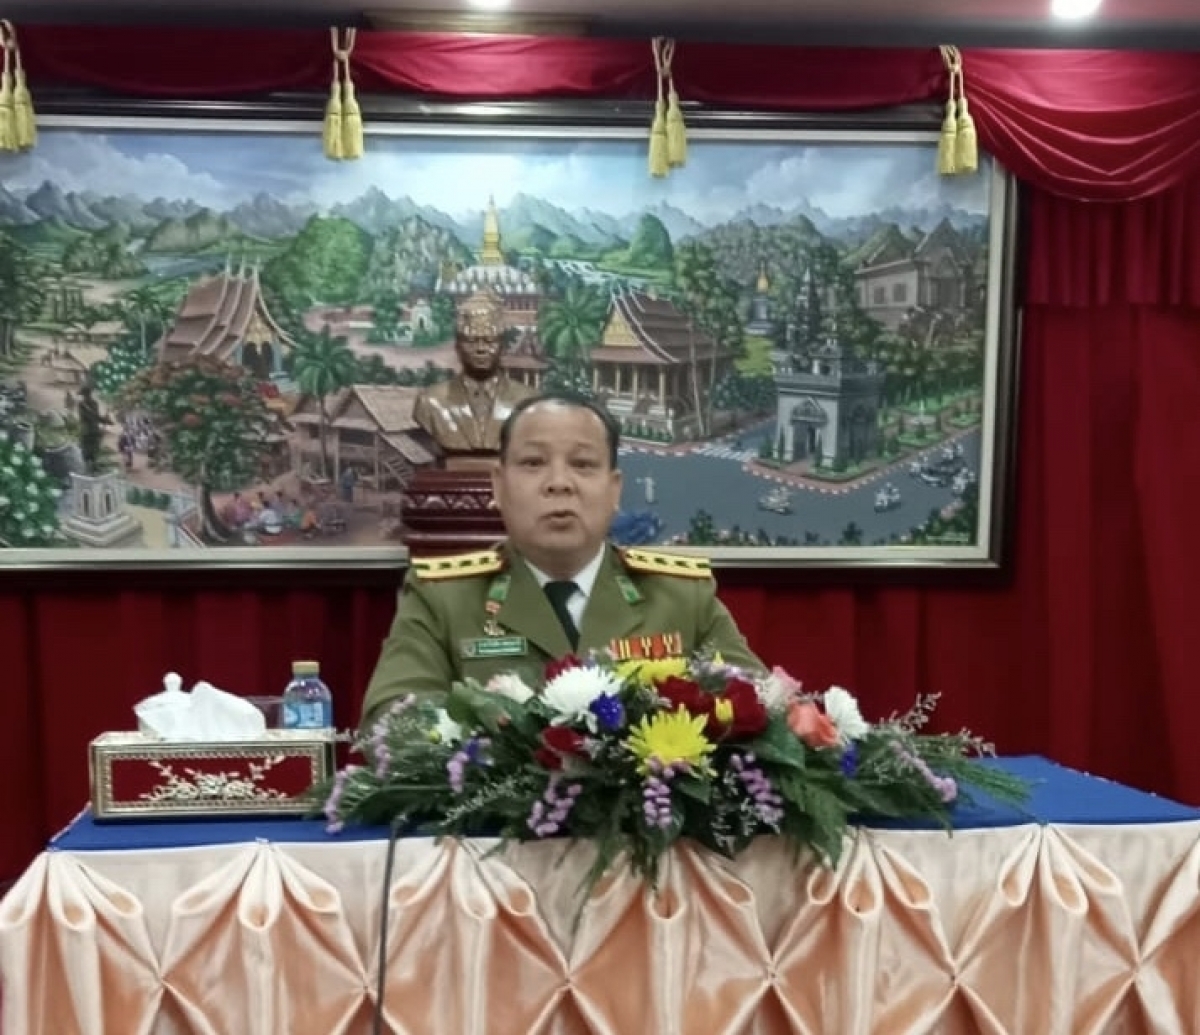 Đại tá Bouphan Phuangmani, Phó Tổng cục trưởng Tổng cục Cảnh sát, Bộ An ninh Lào